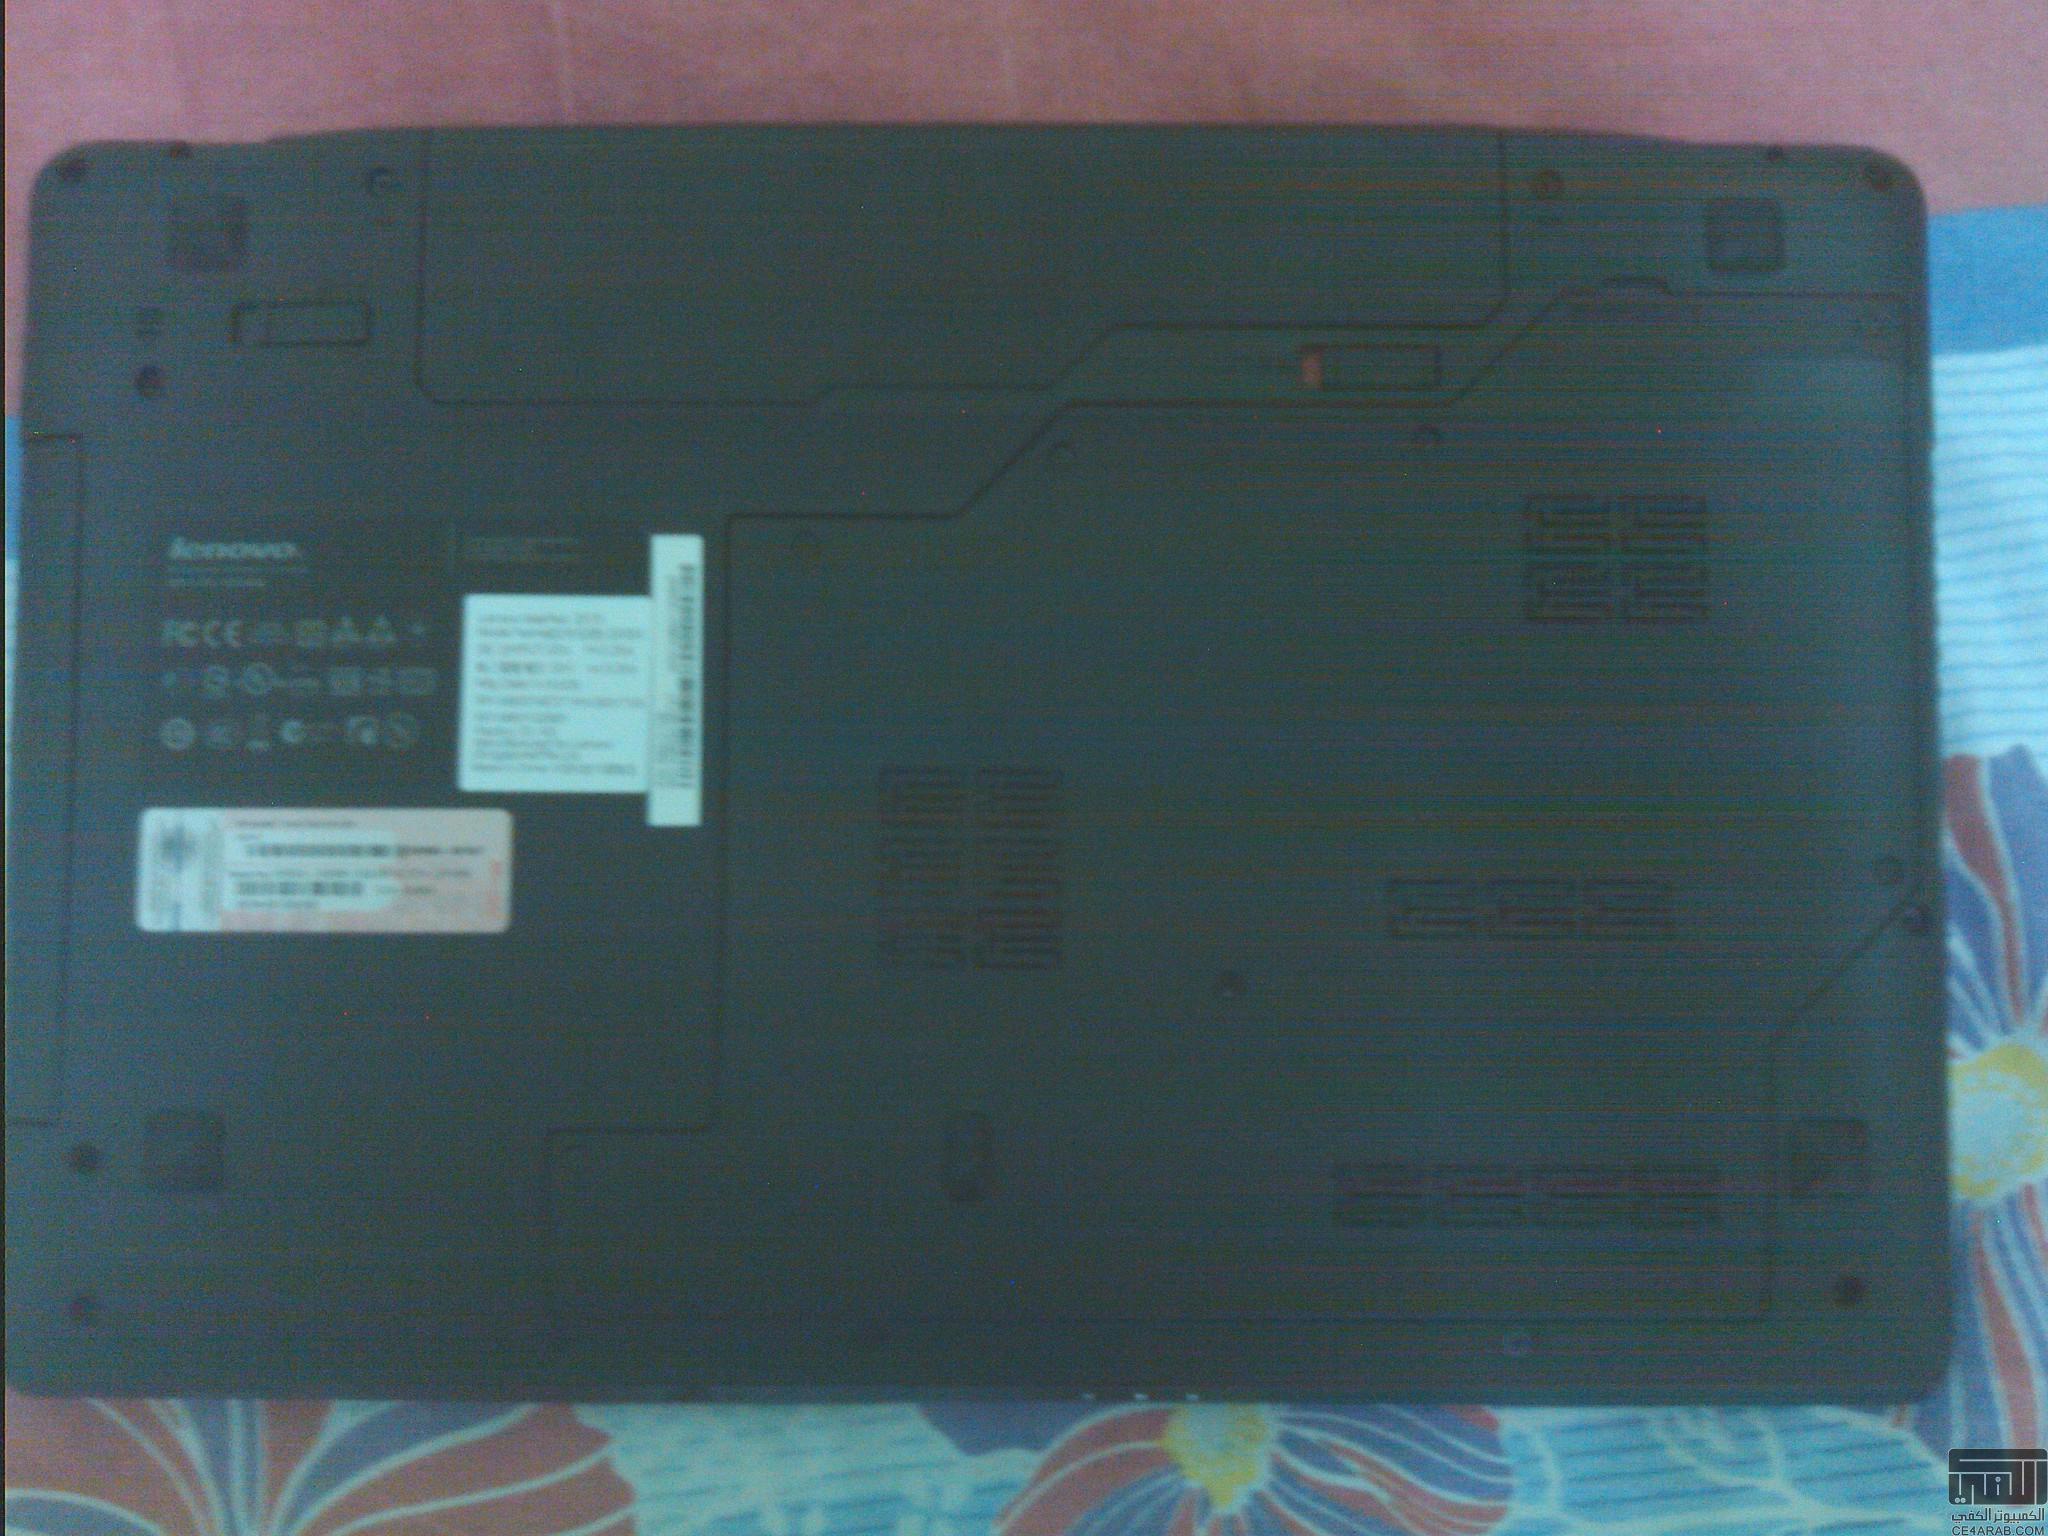 للجادين في مصر Lenovo Z570, I5,Full KeyBoard,Metal,Windows 7